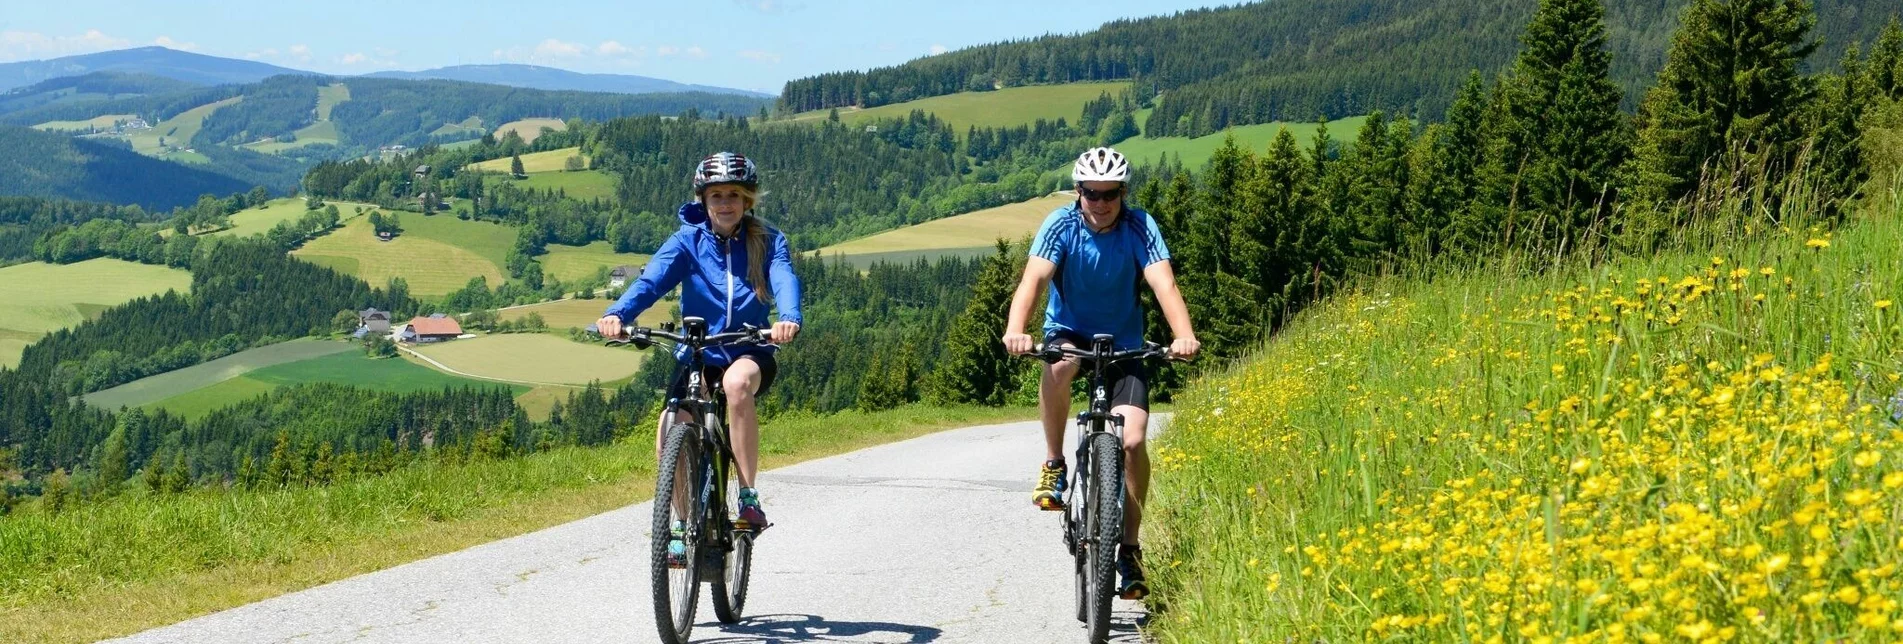 Mountainbike Der große Jogl: Variante 2: über die Wildwiese - Touren-Impression #1 | © Oststeiermark Tourismus